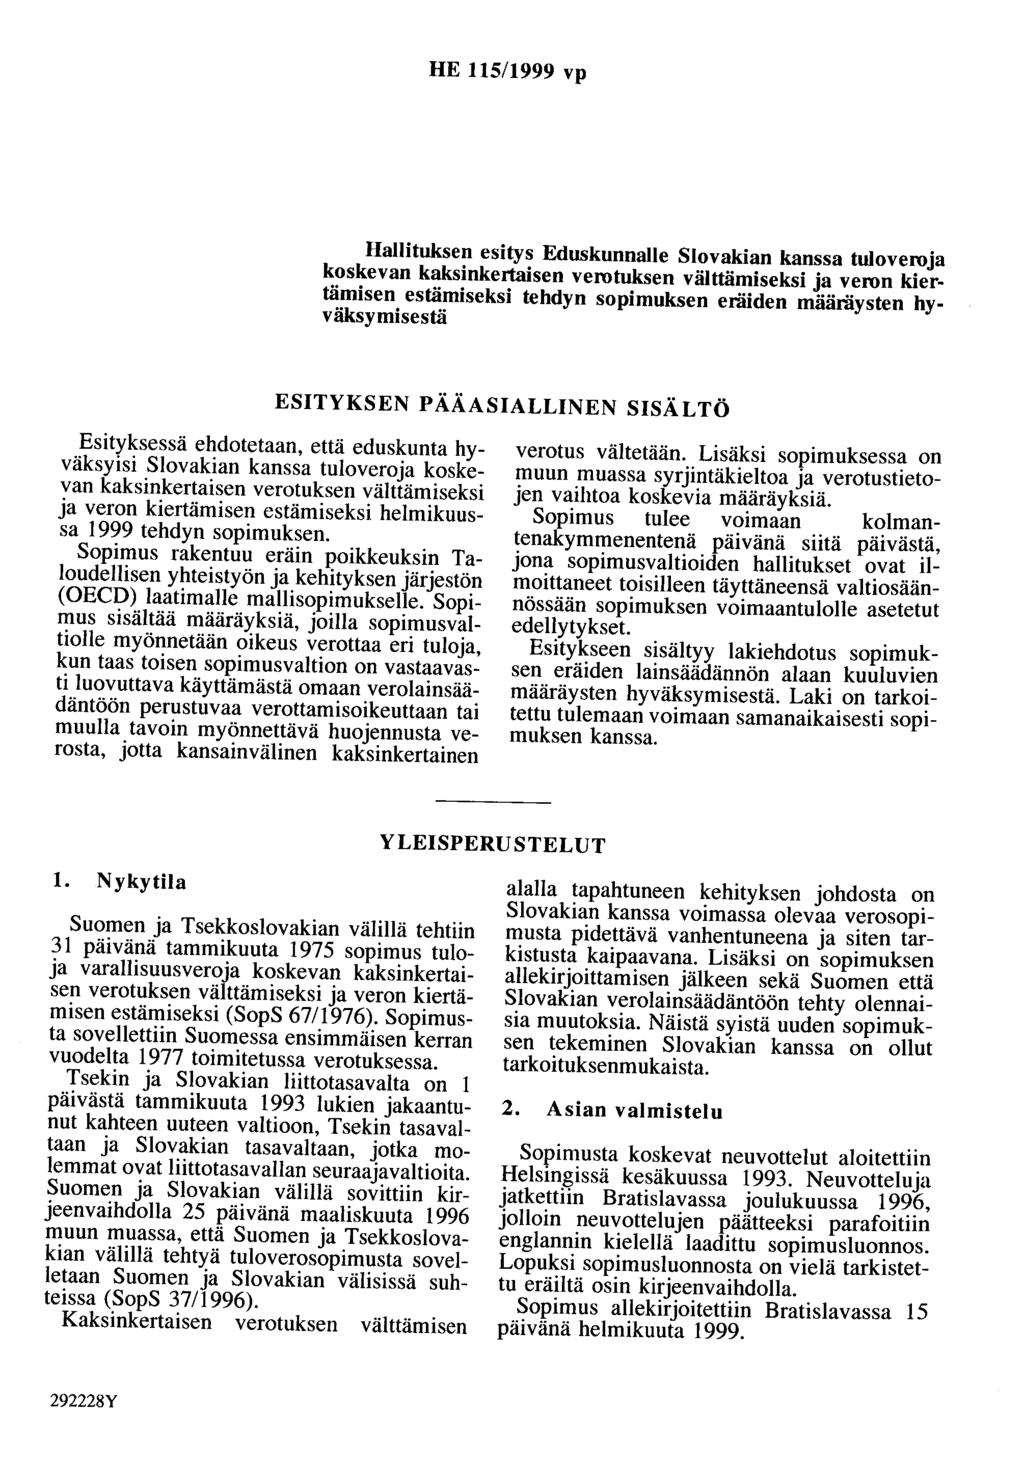 HE 115/1999 vp Hallituksen esitys Eduskunnalle Slovakian kanssa tuloveroja koskevan kaksinkertaisen verotuksen välttämiseksi ja veron kiertämisen estämiseksi tehdyn sopimuksen eräiden määräysten